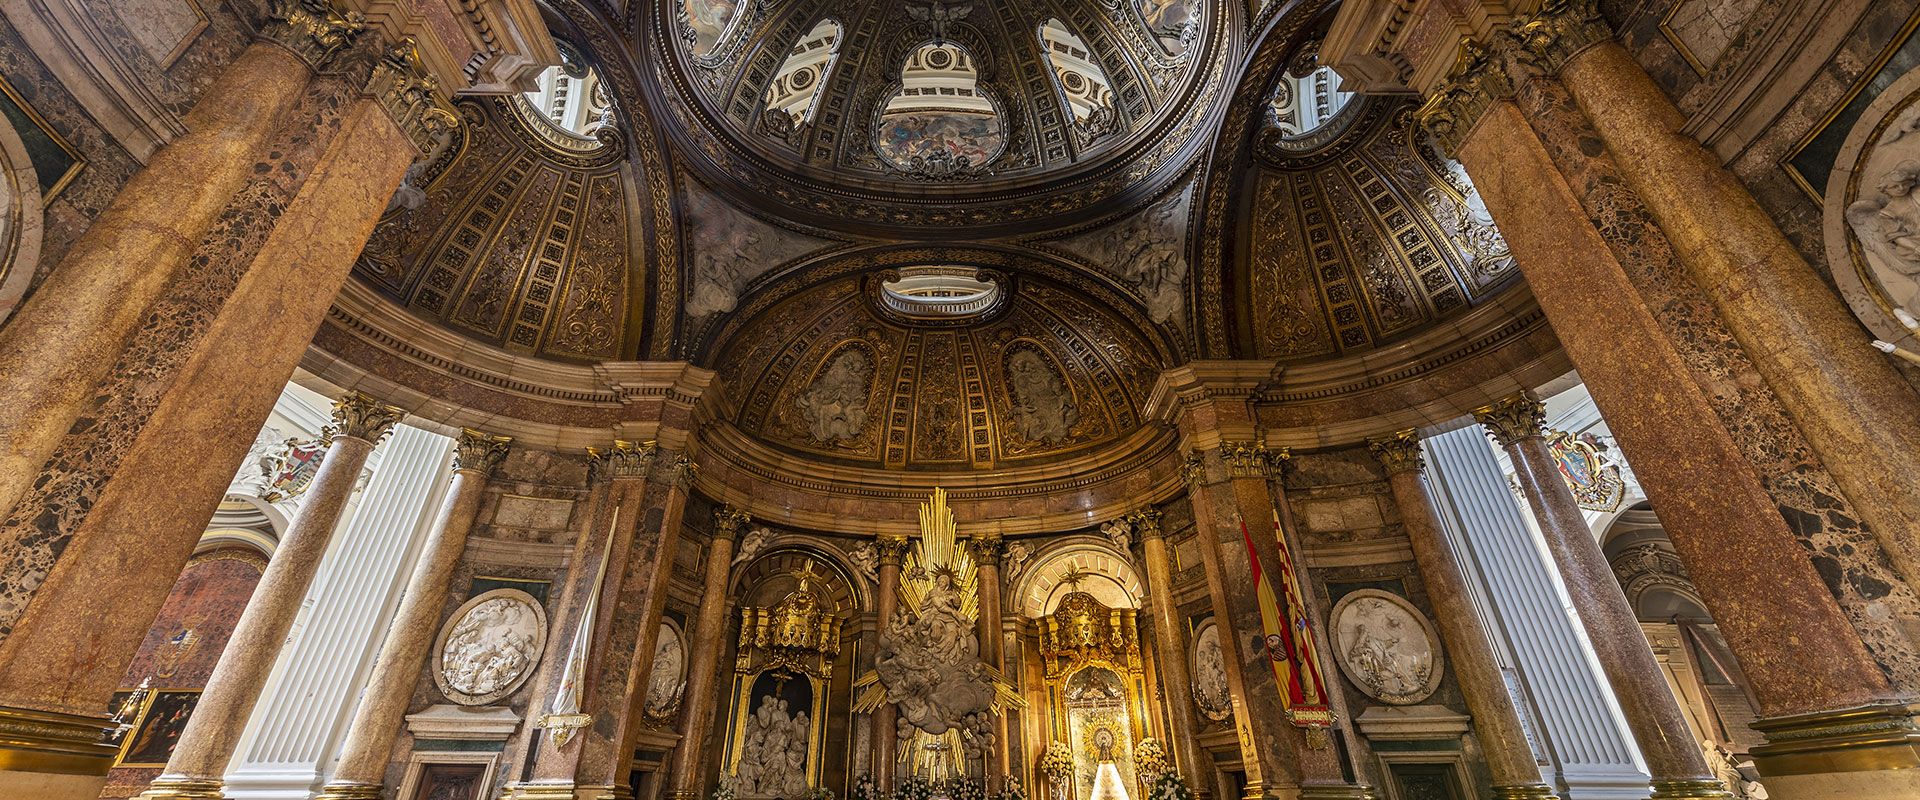 Mantos - Catedral Basílica del Pilar